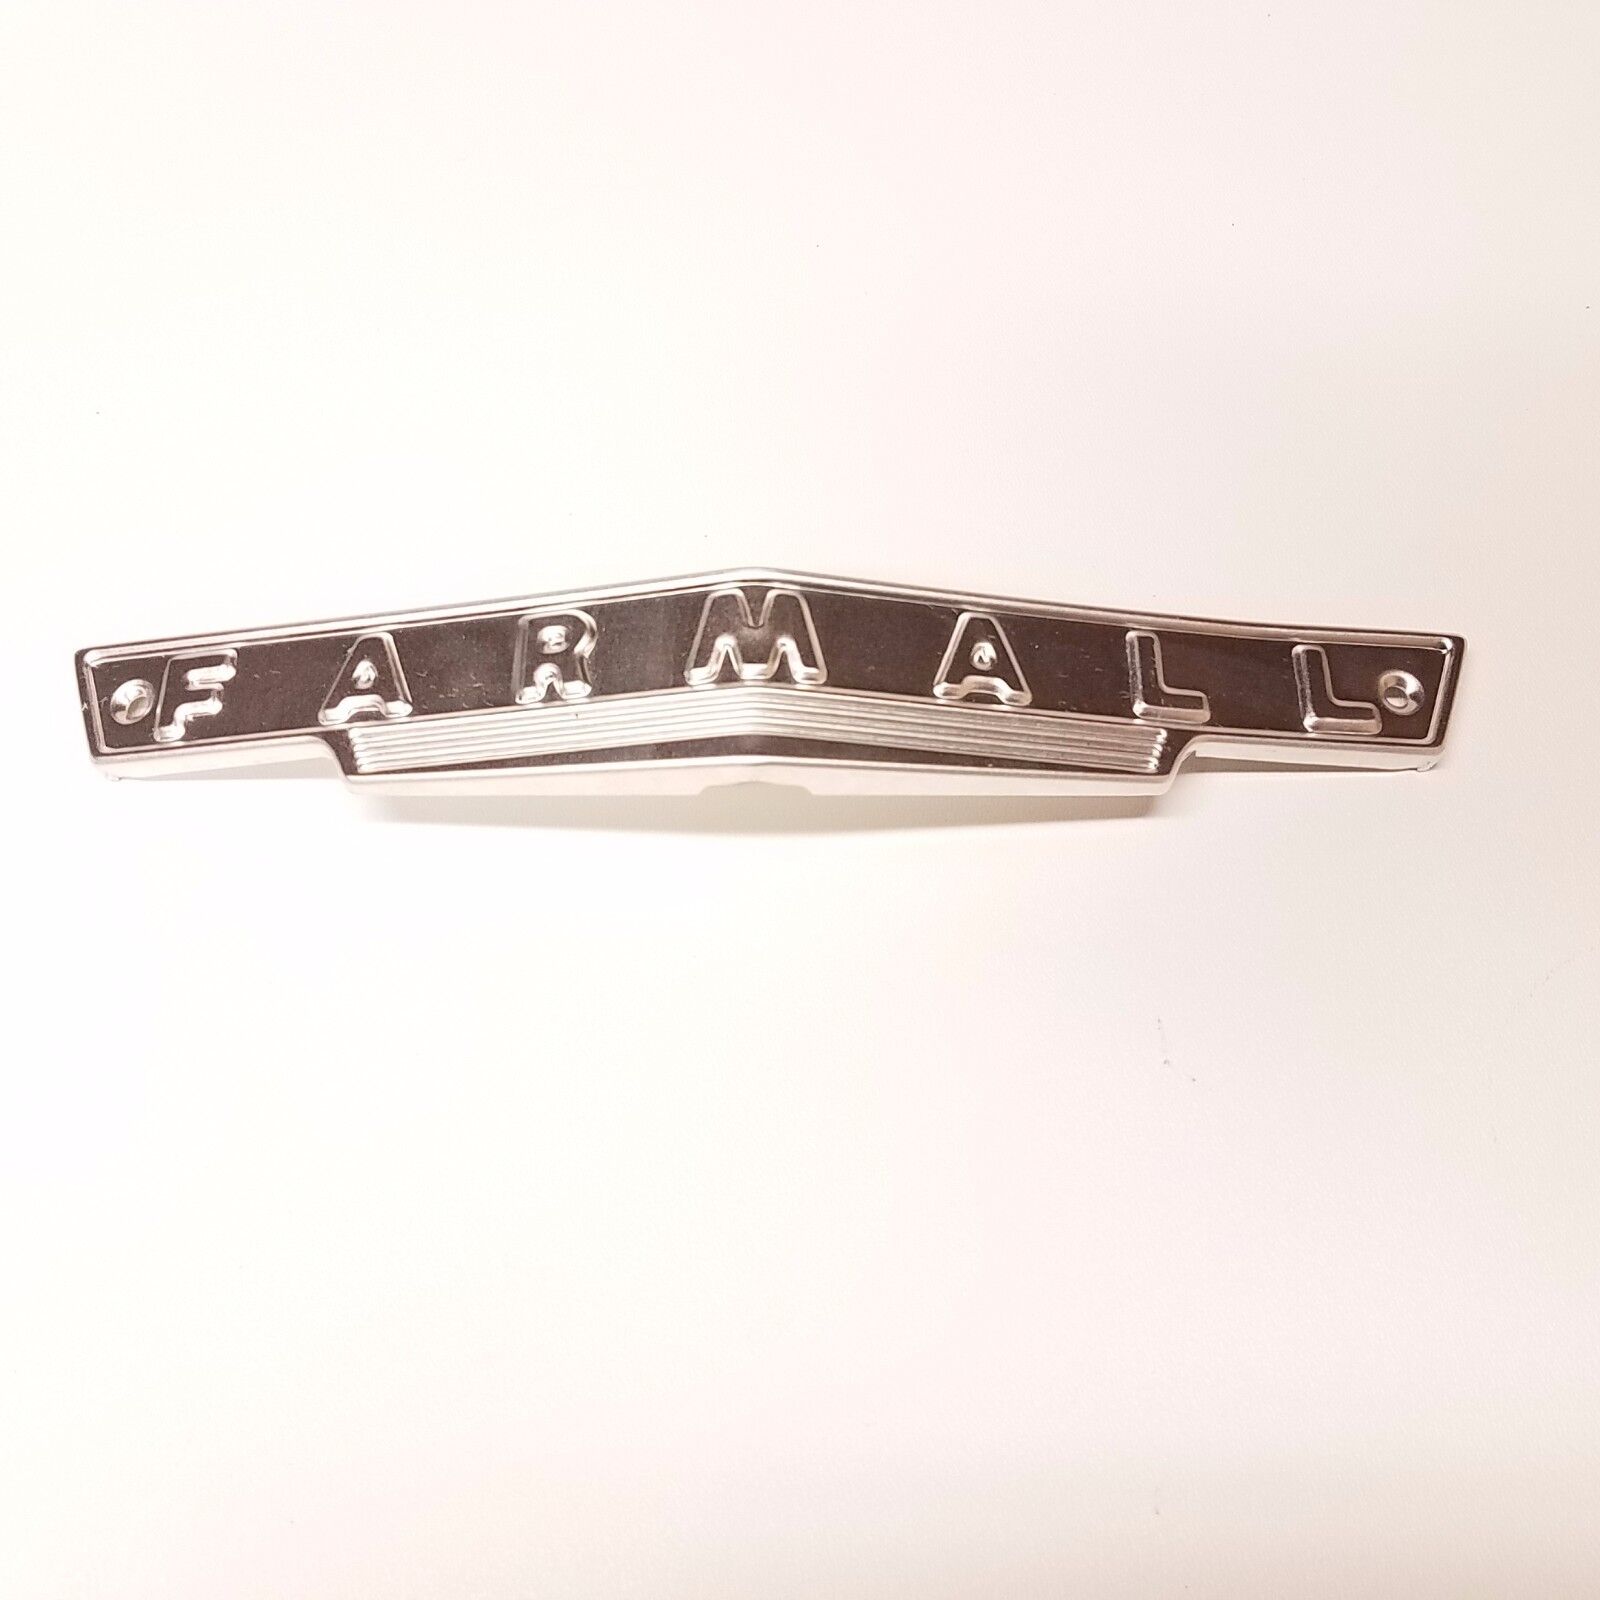 Farmall A B BN AV front grill emblem